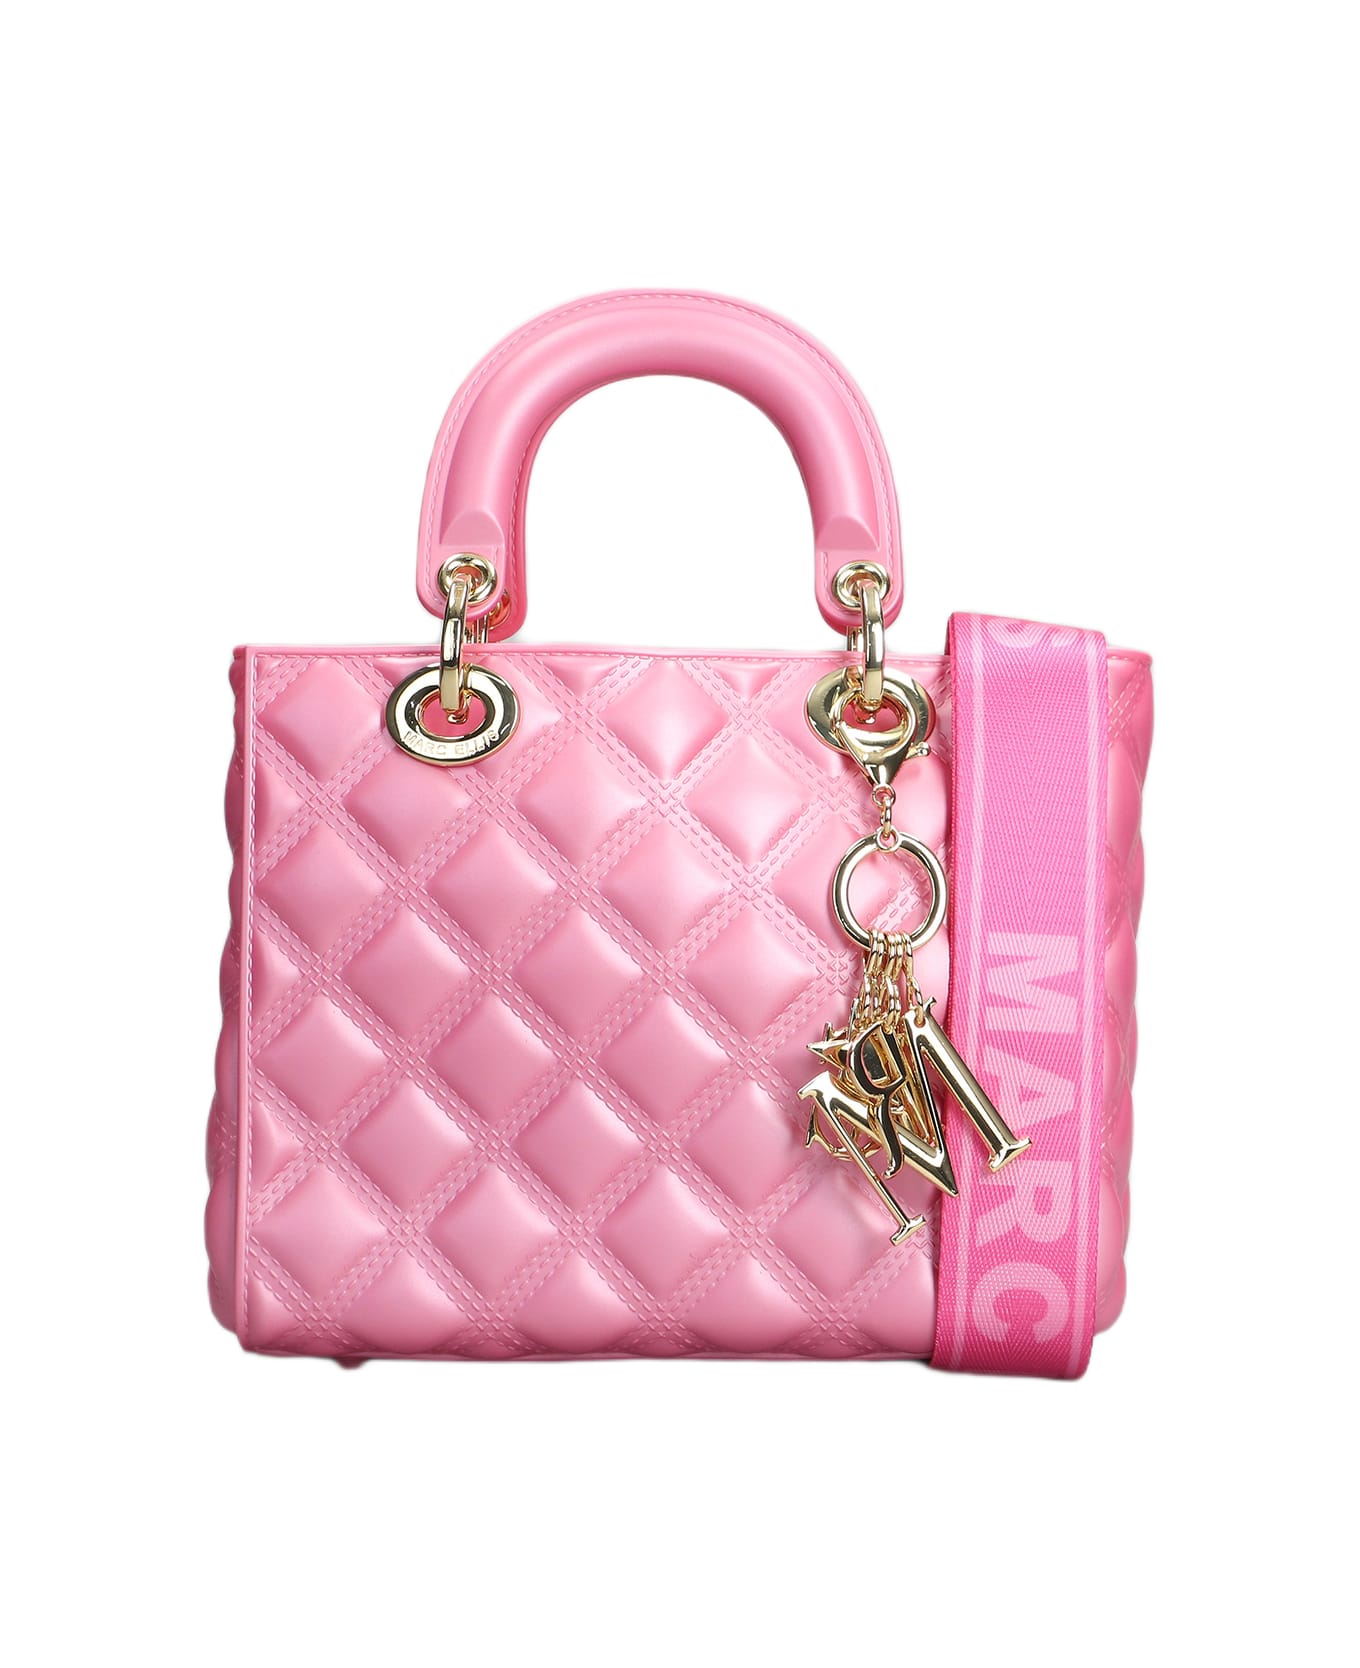 Marc Ellis Flat Missy M Shoulder Bag In Rose-pink Pvc - rose-pink